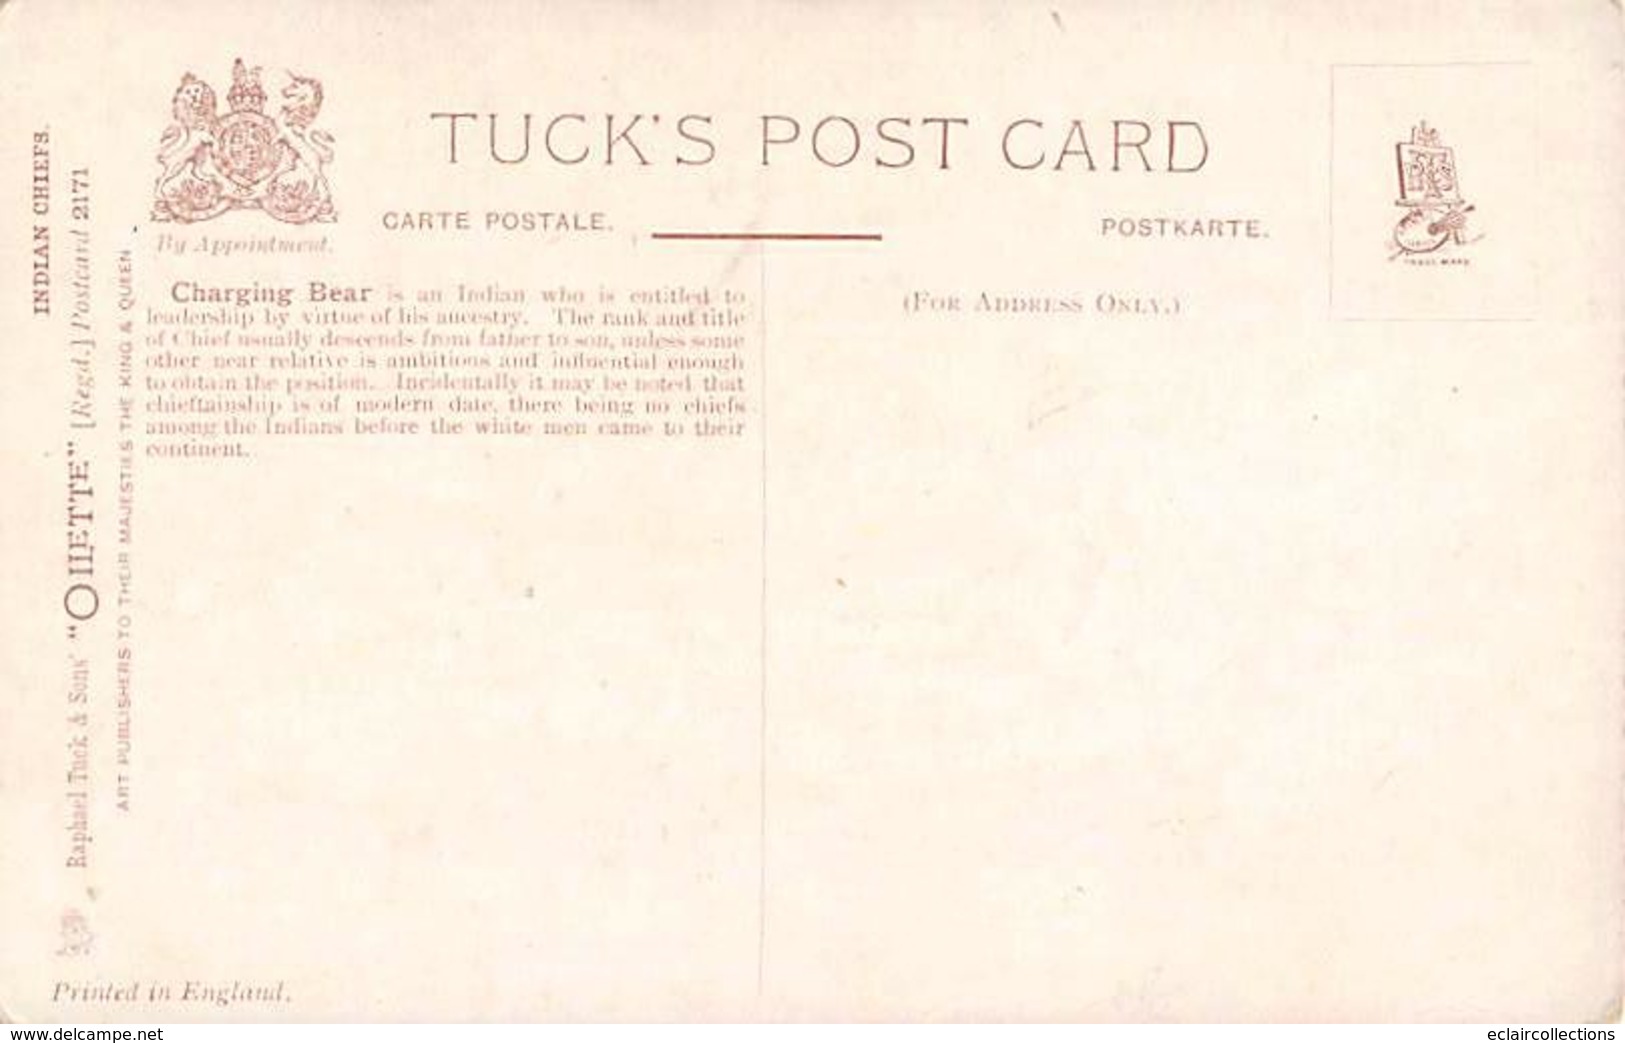 Thème. Indiens .   Chefs Indiens Lot de 8 cartes. de la série Tuck's Post Card      (voir scan)